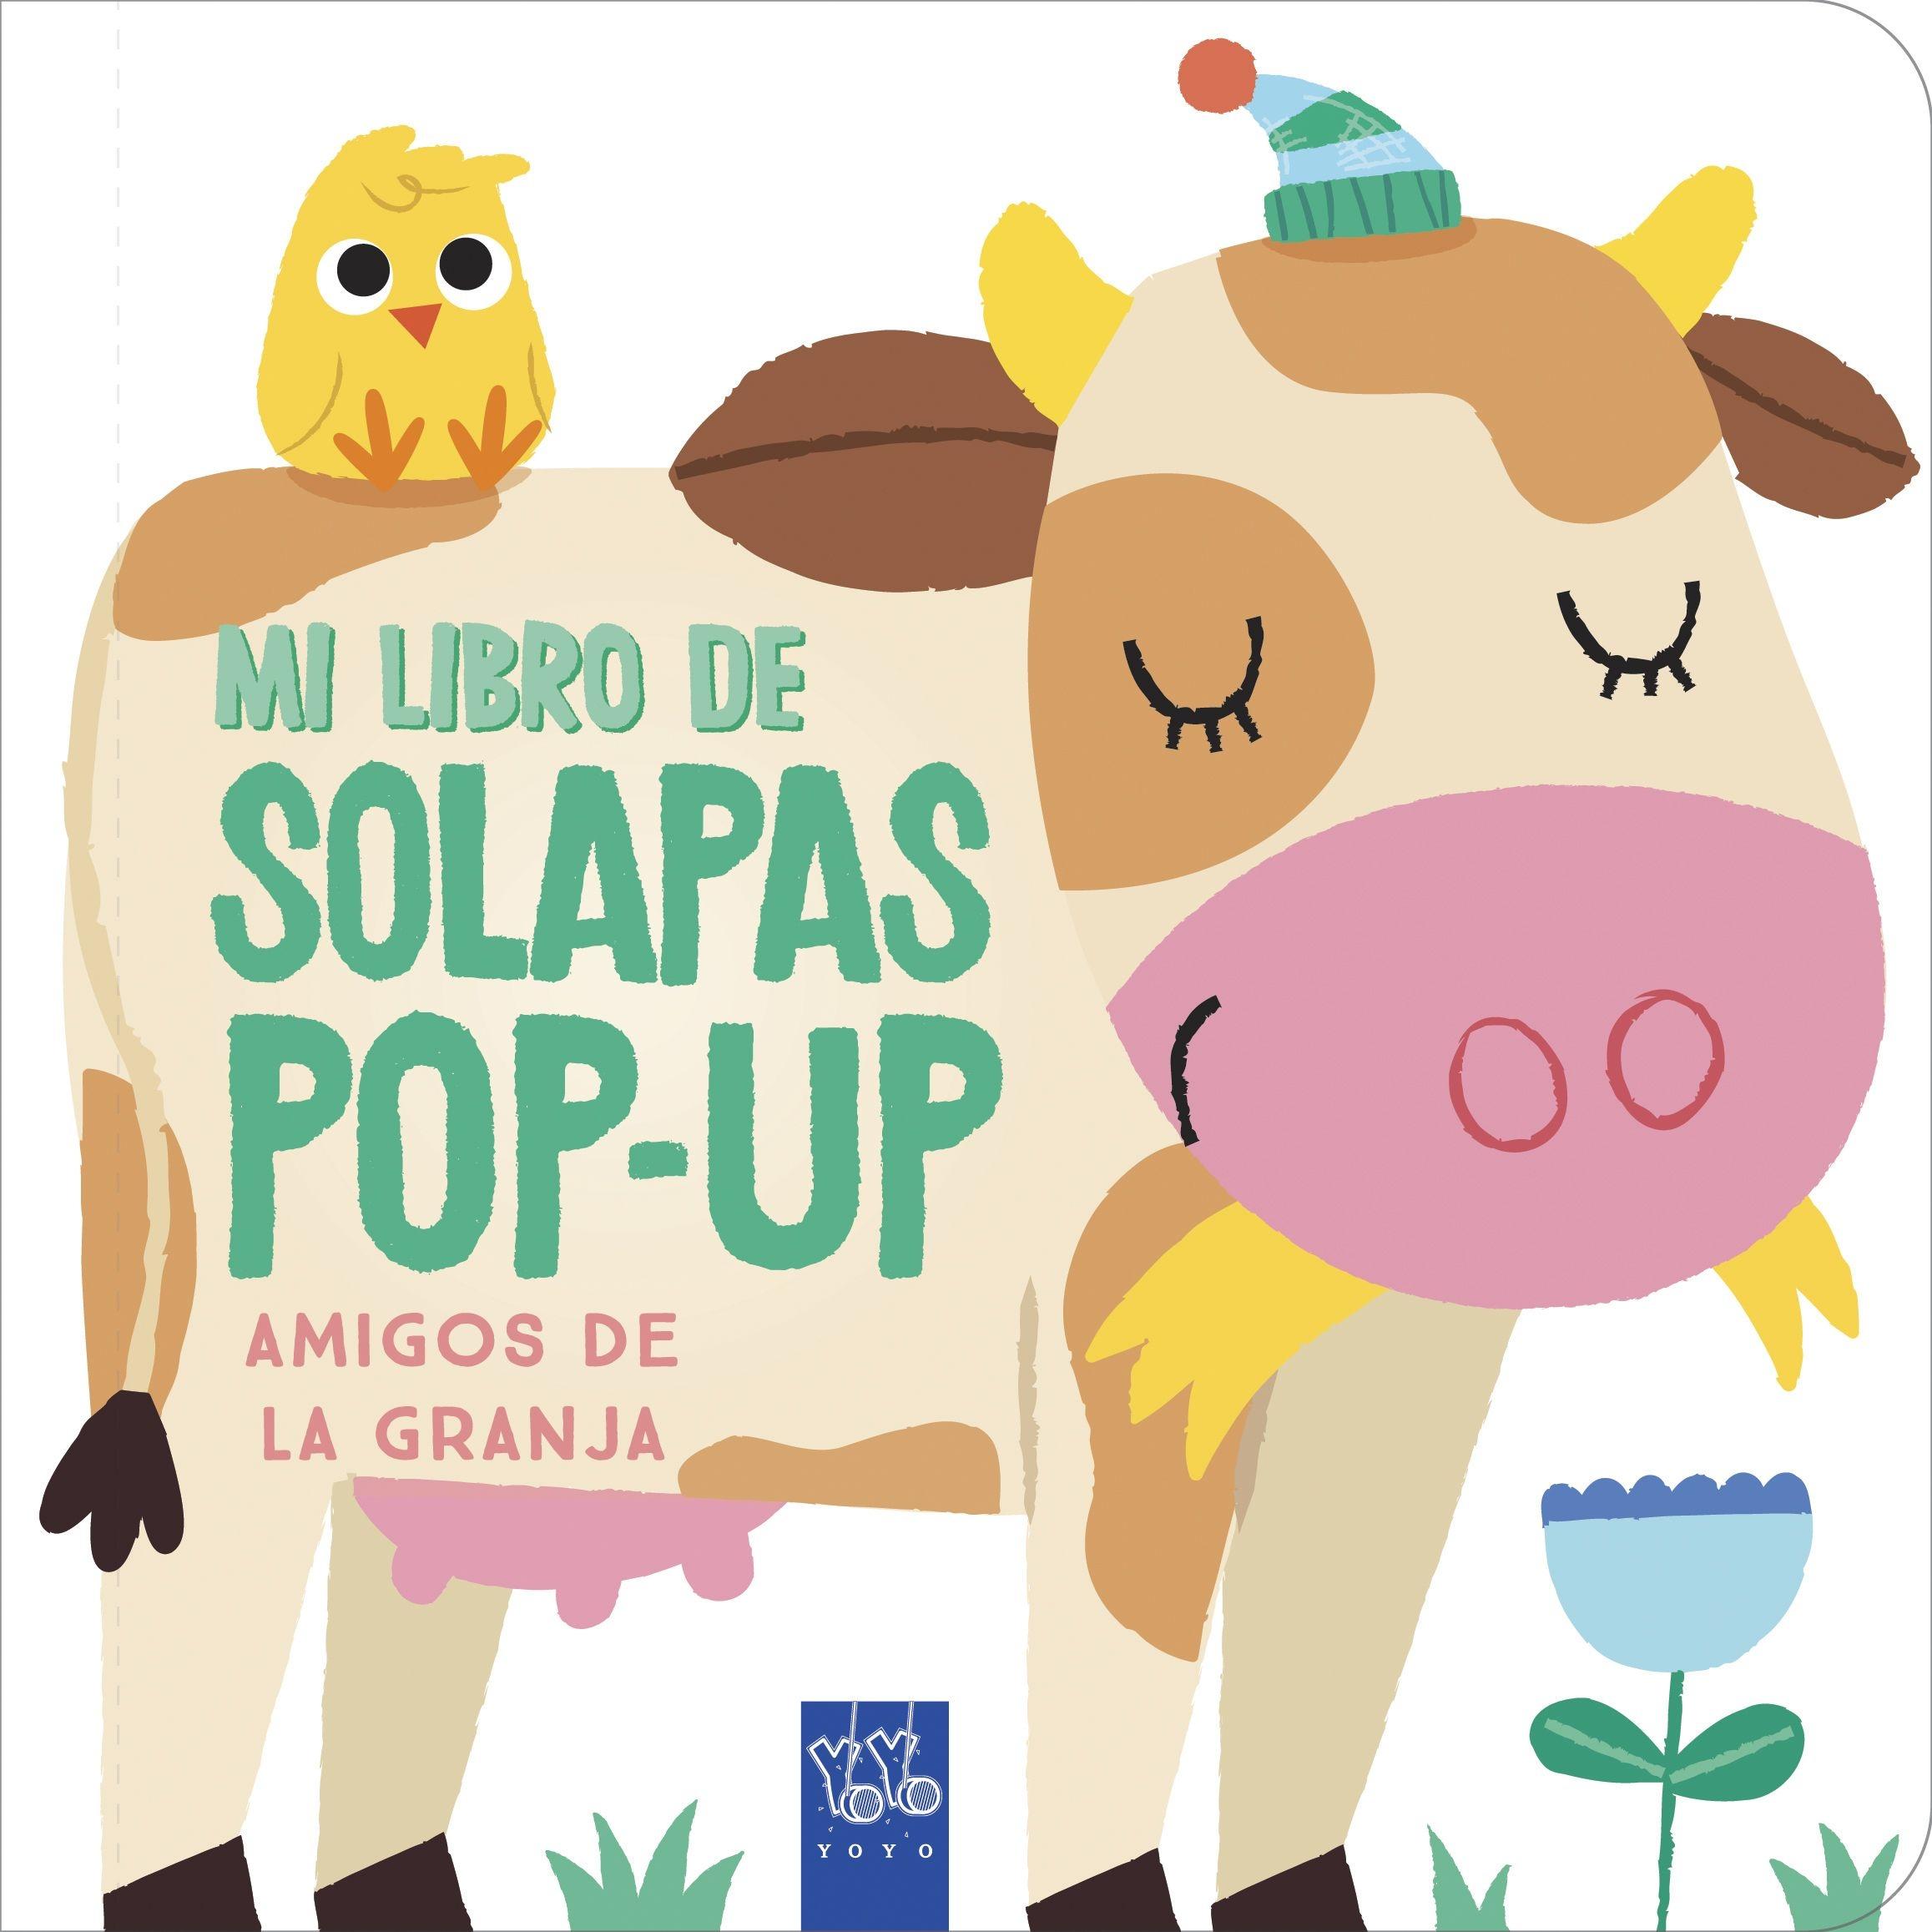 Amigos de la granja "Mi libro de solapas pop-up"